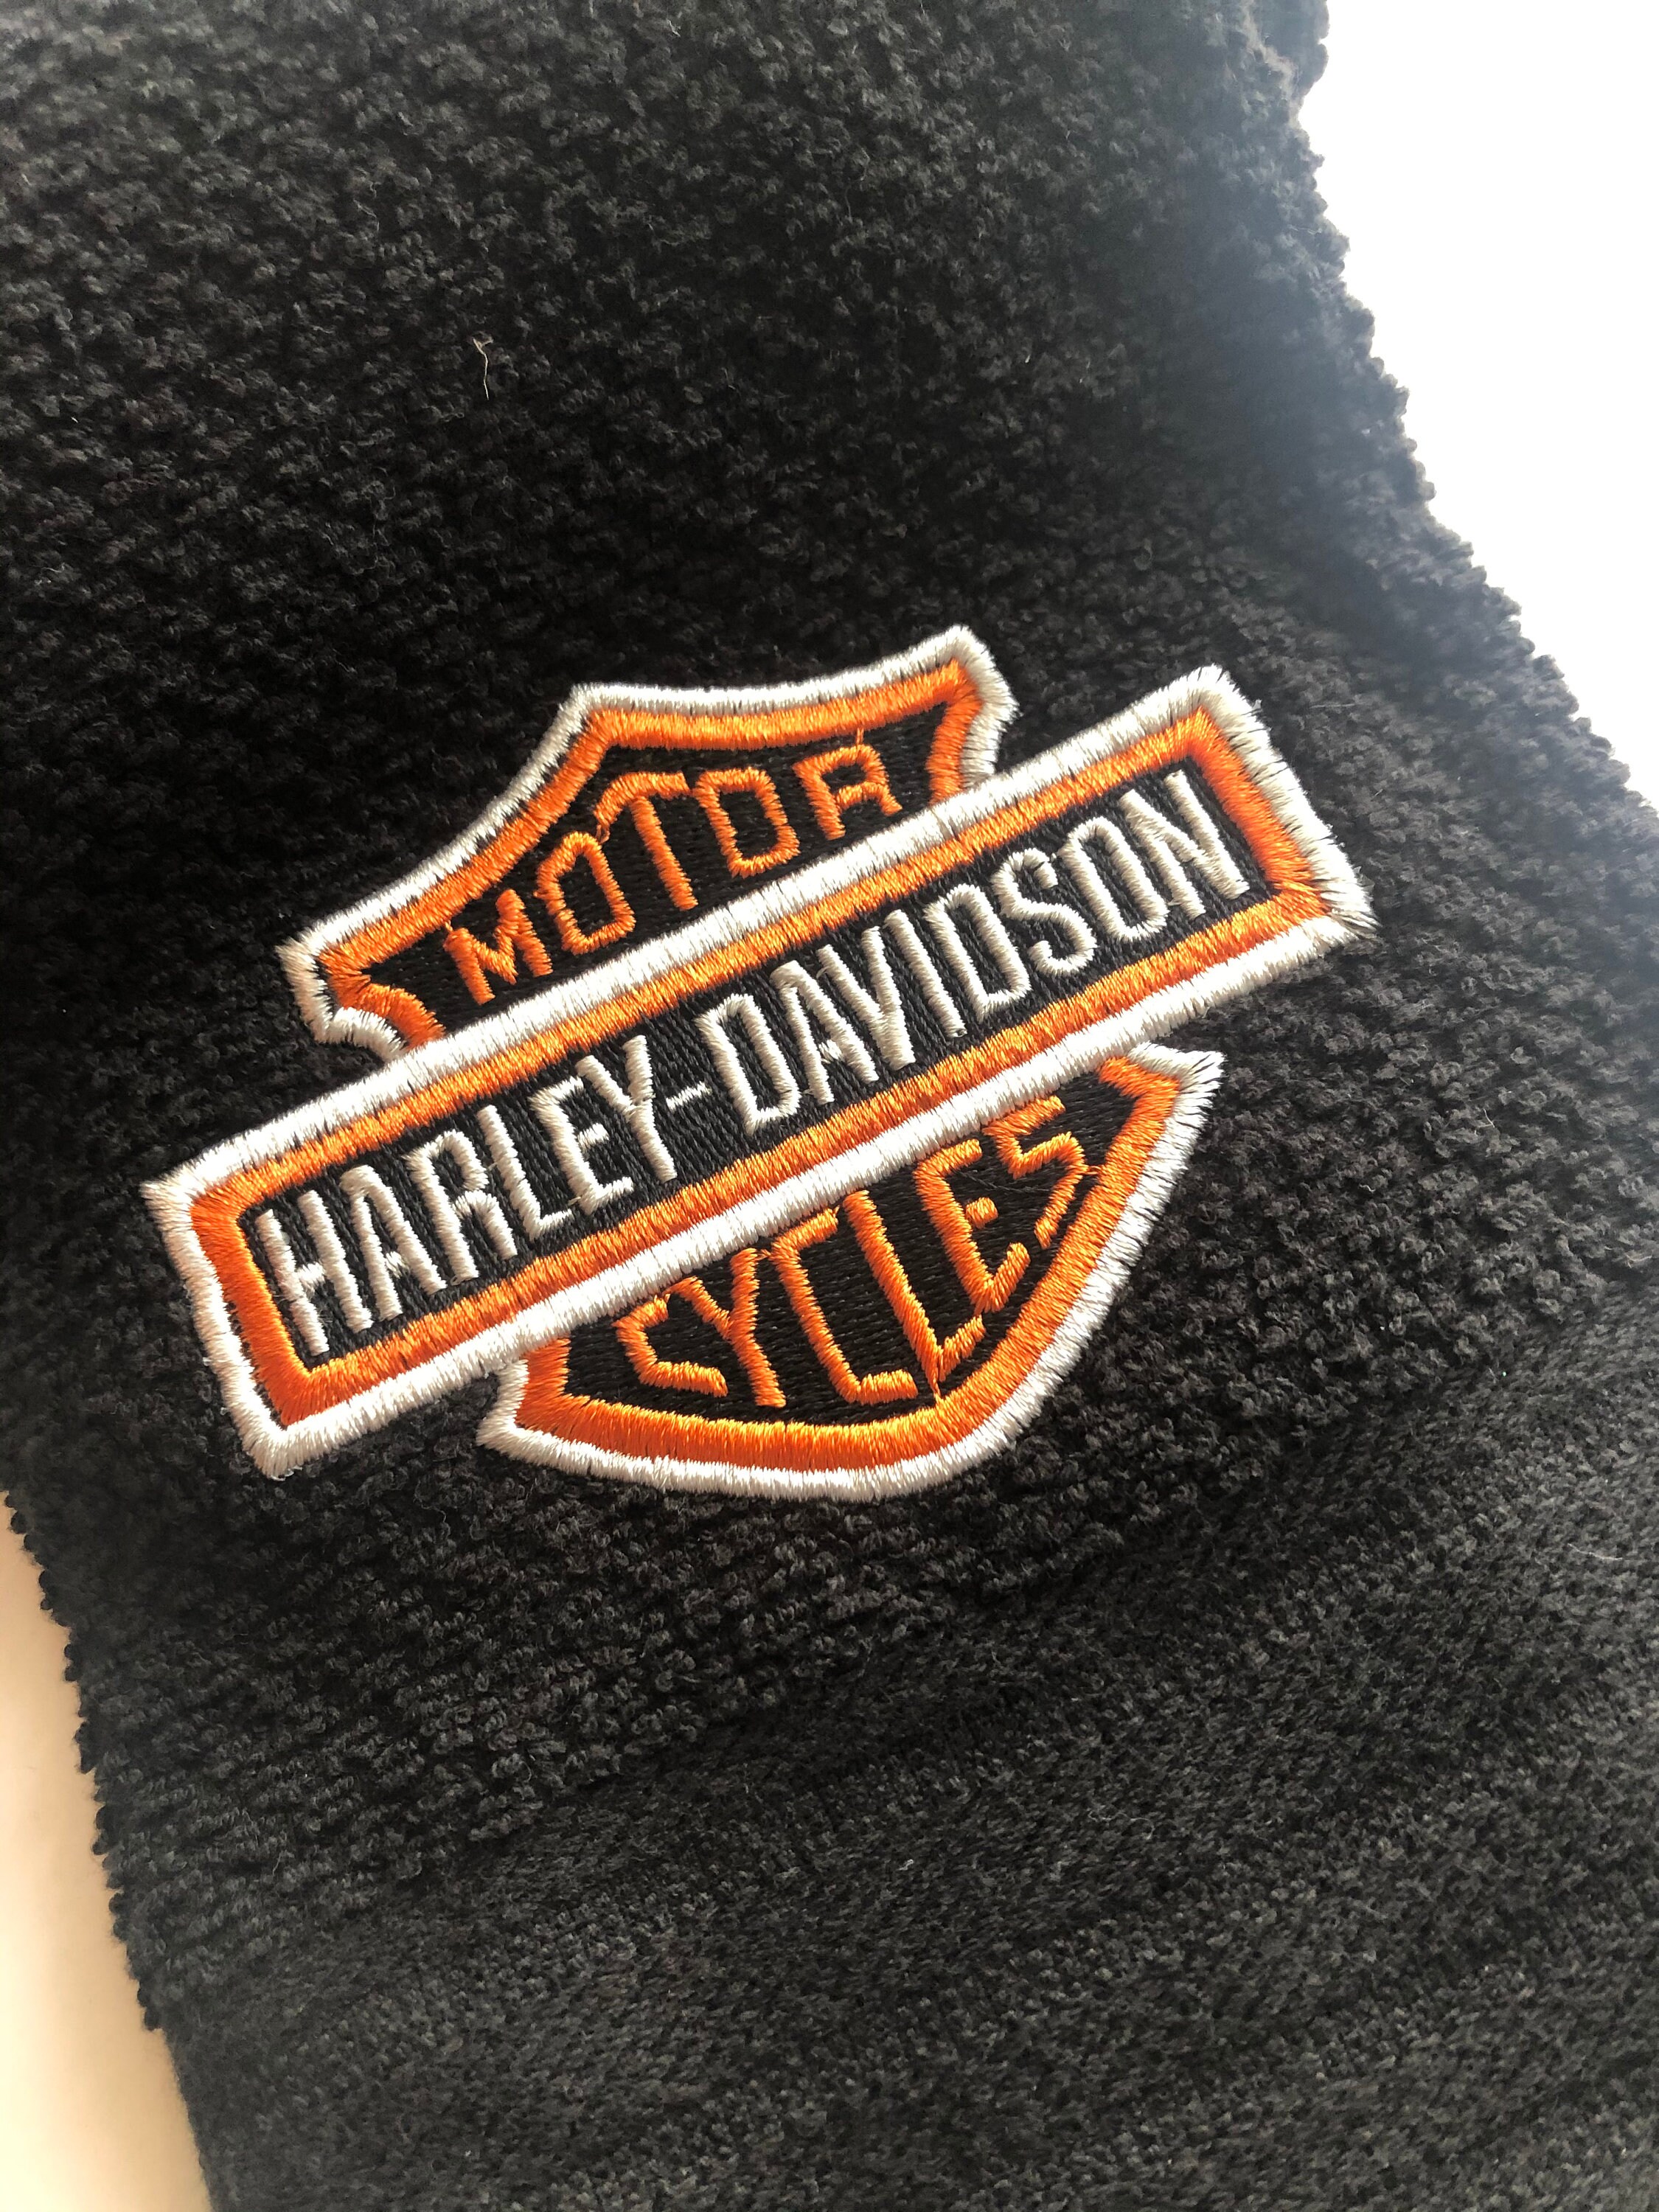 Harley Davidson Logo embroidered towel | Etsy